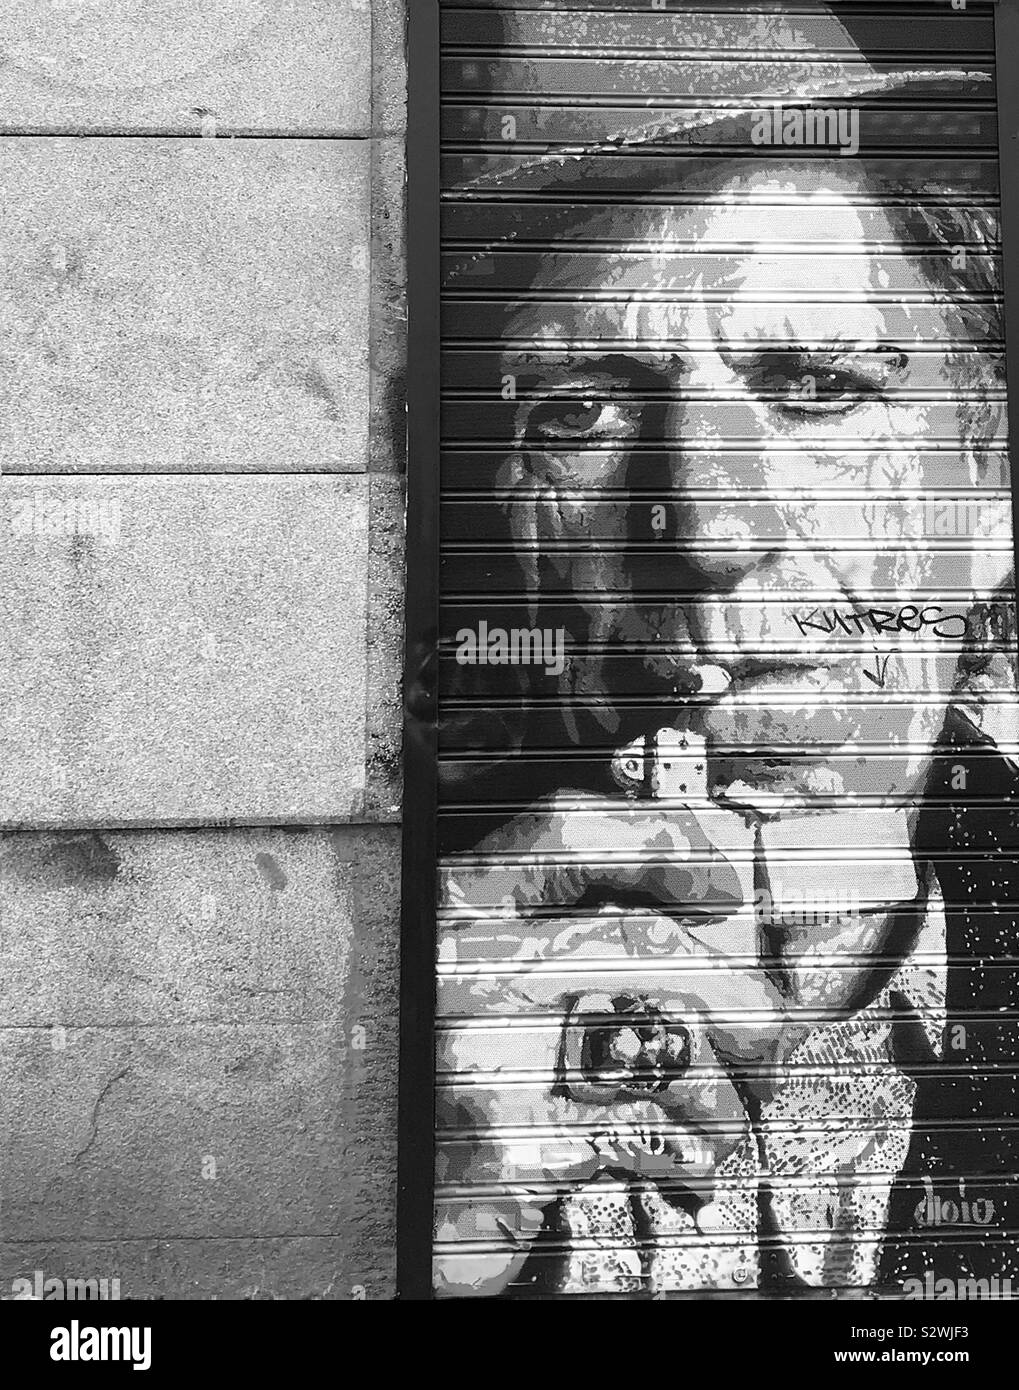 L'art de l'obturateur d'une boutique dans le quartier branché de Malasaña, Madrid fidèlement rock legend Keith Richard des Rolling Stones d'allumer une cigarette. Banque D'Images